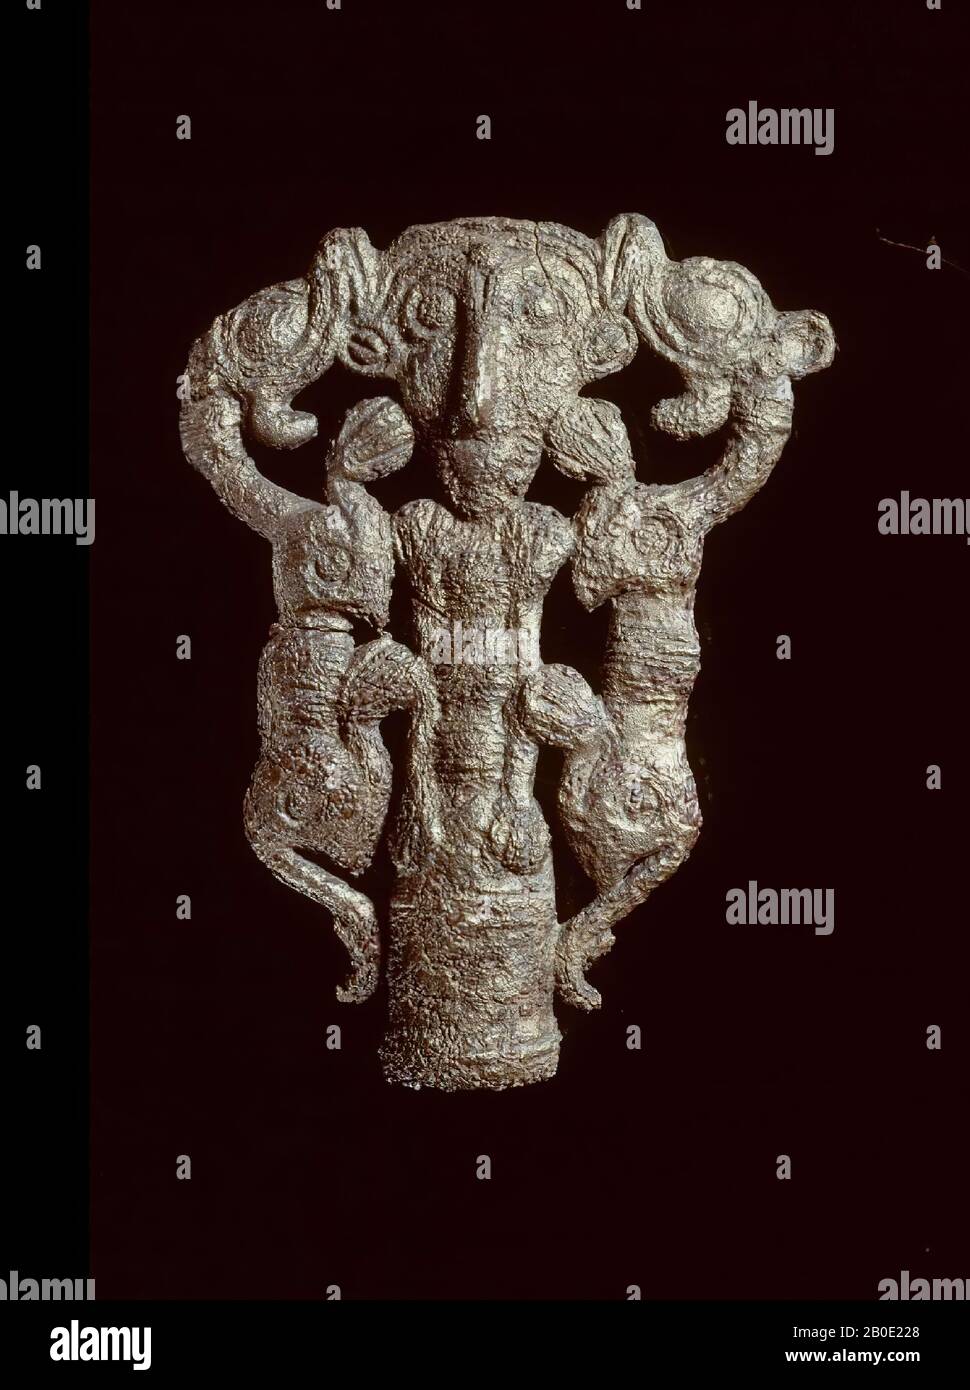 Couronne standard en bronze. Seulement travaillé en détail à l'avant. Le chiffre humain a été réduit ici à une tête énorme. De l'autre côté de la créature avec une tête humaine, deux fabuleux créatures ou lions sont représentés., objet Cérémonial, métal, bronze, H 9,5 cm, Iron Age III 800-600 BC, Iran Banque D'Images